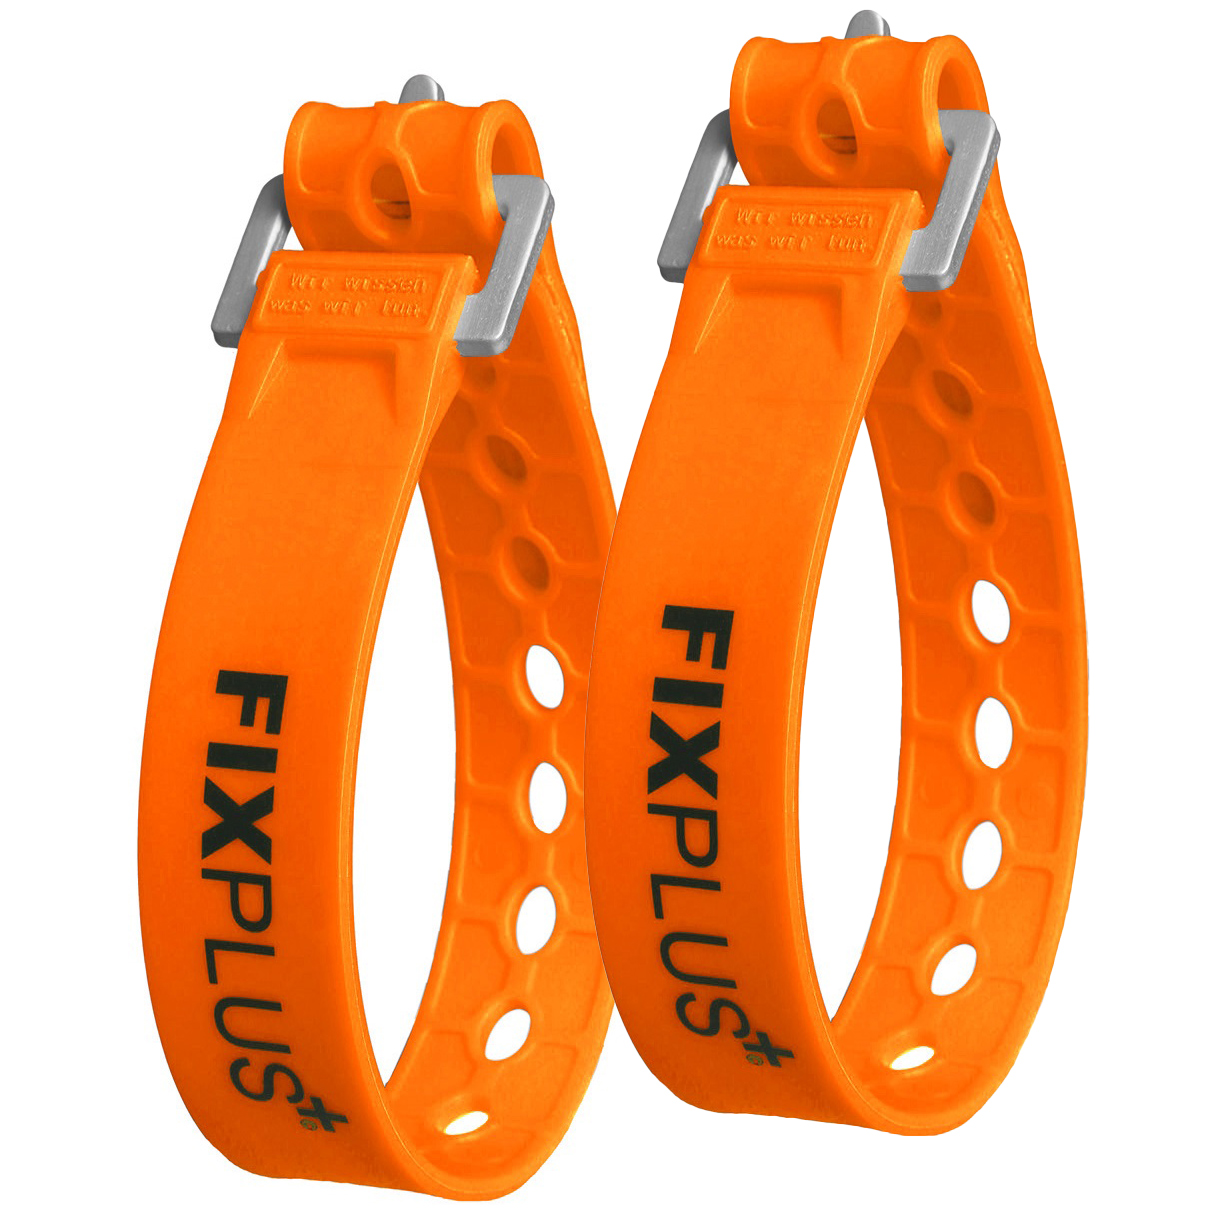 Productfoto van FixPlus Strap 23cm - 2 pcs - orange